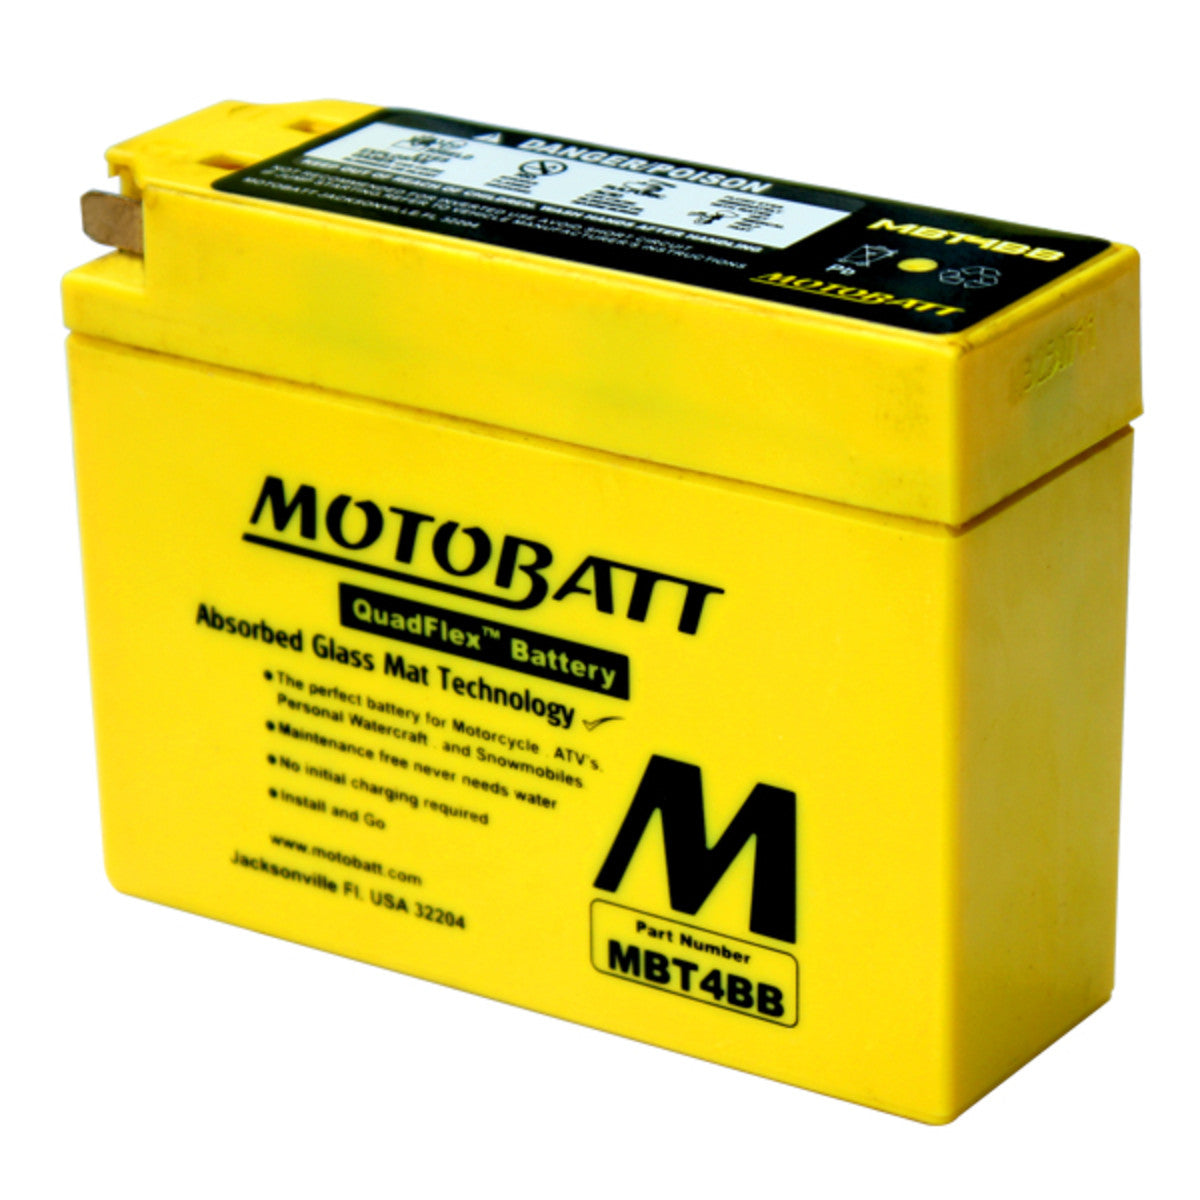 MBT4BB Motobatt 12V AGM Battery